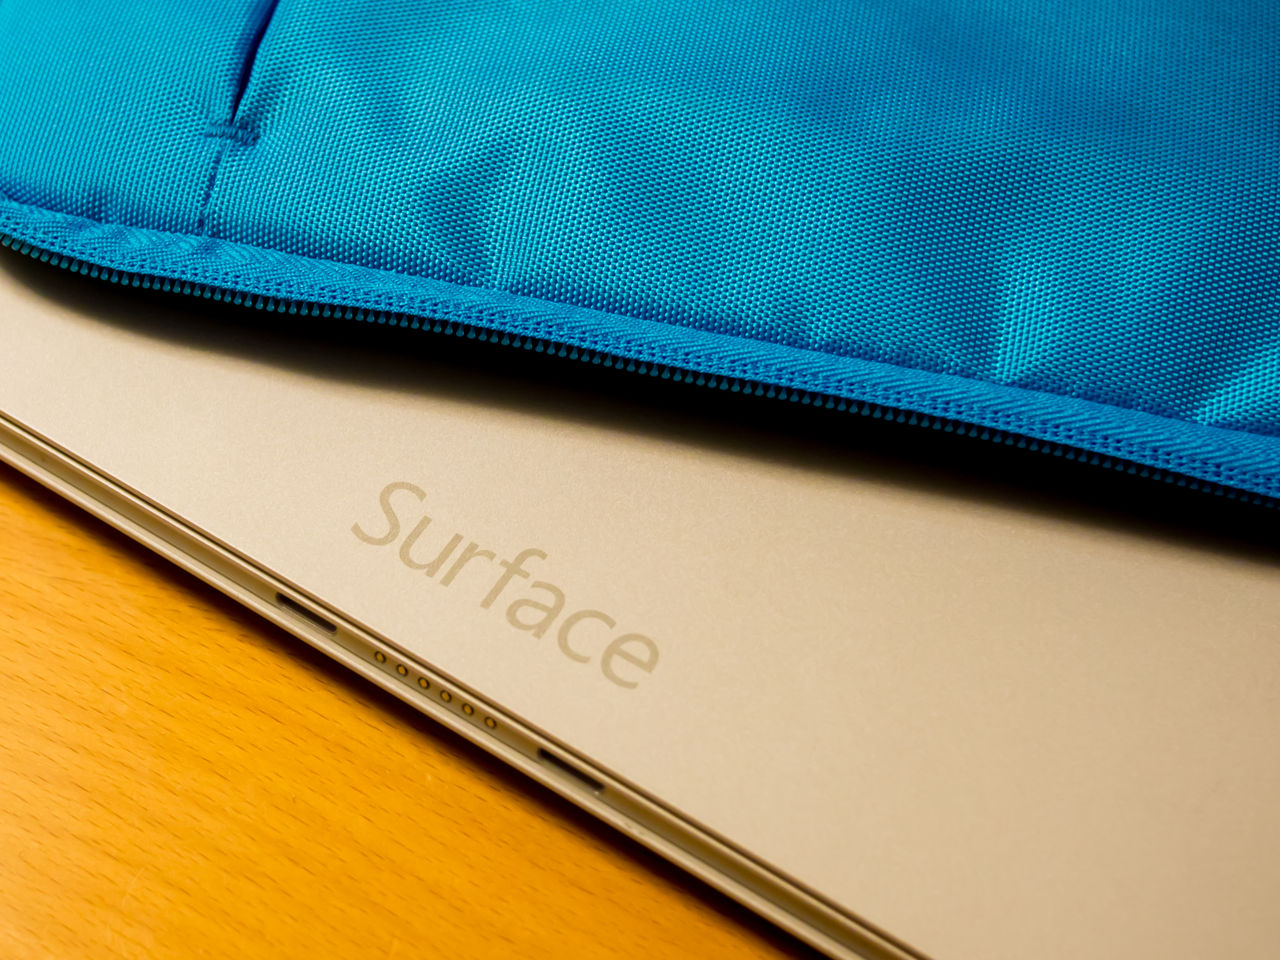 Surface Proシリーズにぴったりのスリーブケース Incipio Ord Sleeve For Surface Pro 3 を使ってみたレビュー クラベル